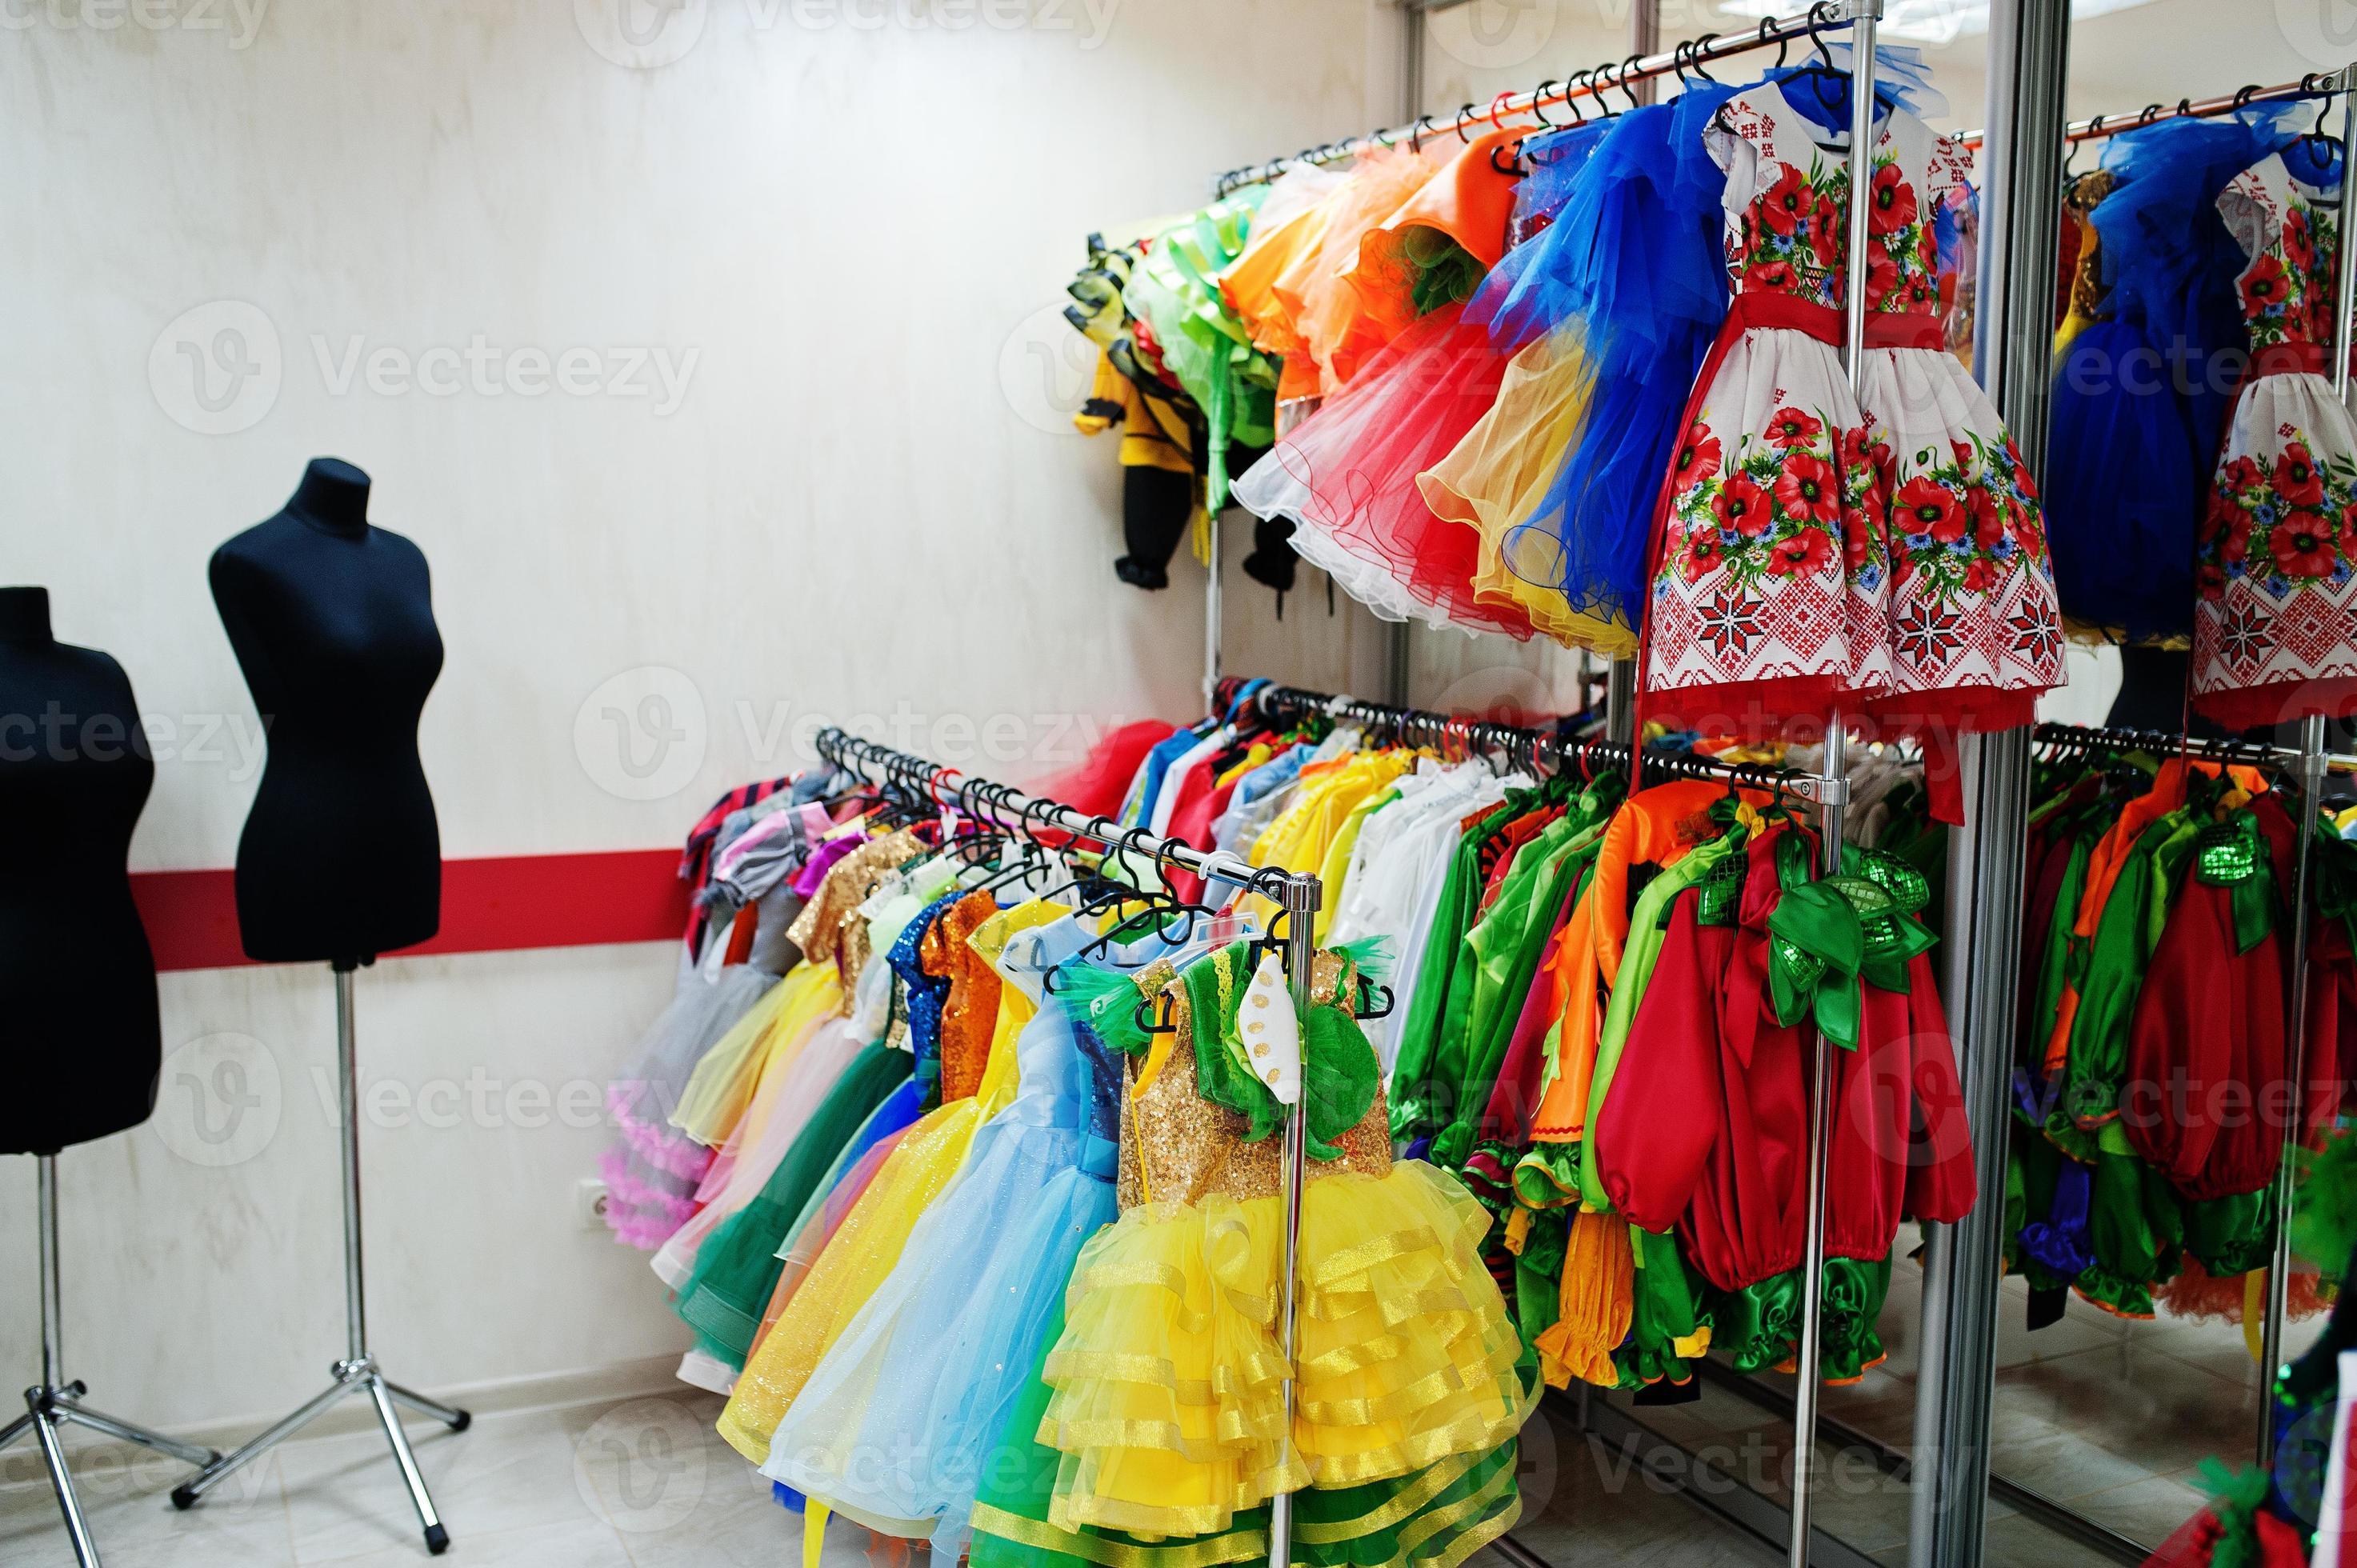 https://static.vecteezy.com/ti/photos-gratuite/p2/10435351-costumes-de-carnaval-pour-enfants-au-bureau-de-couturiere-photo.jpg